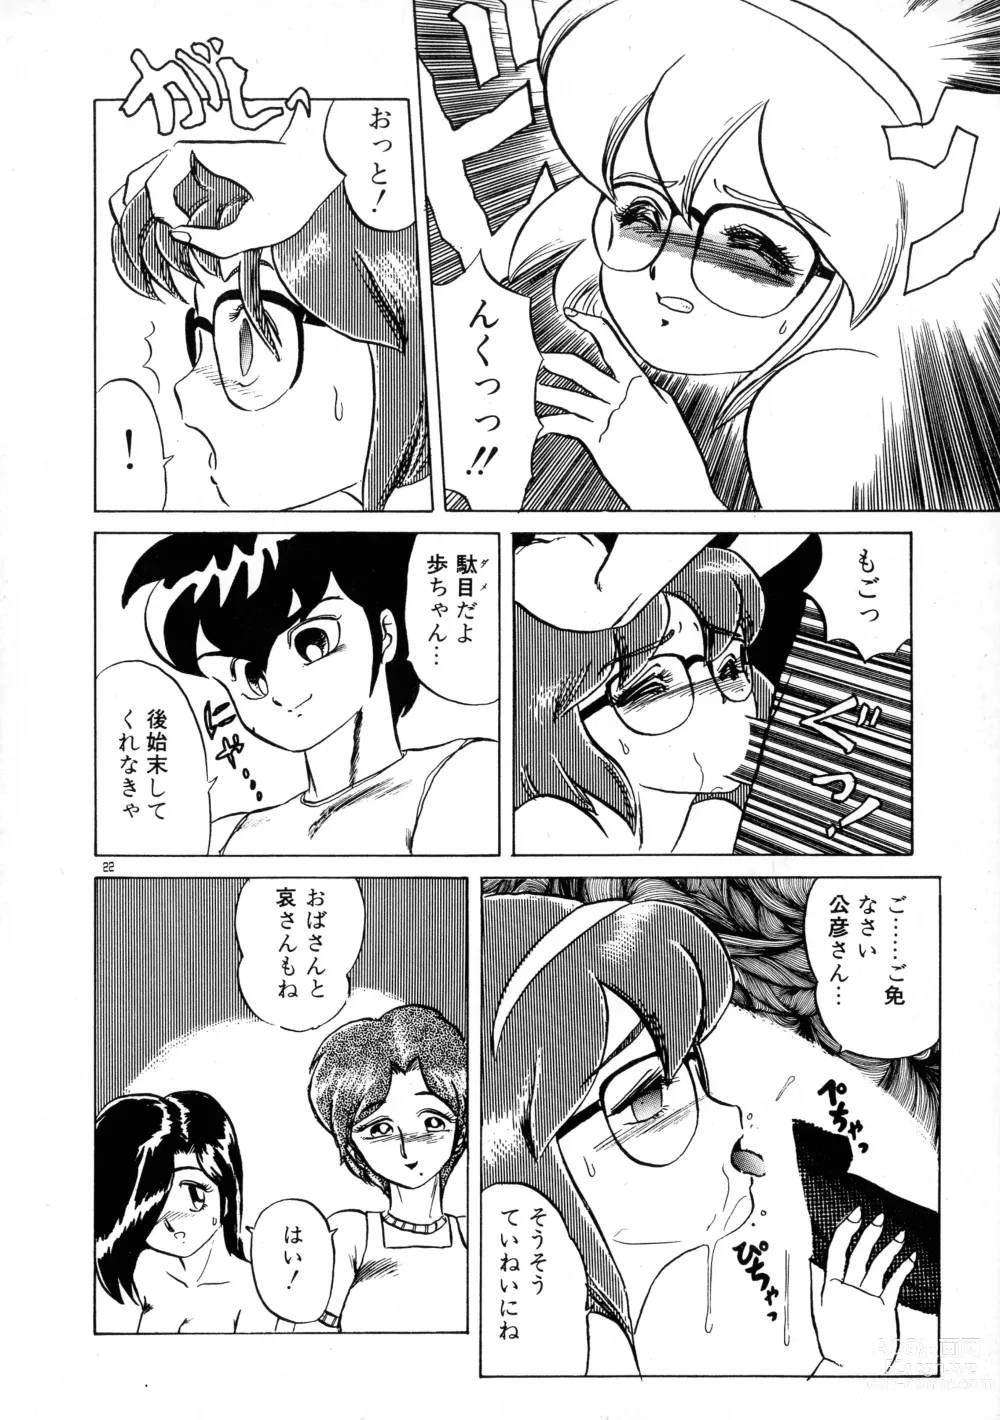 Page 22 of manga Akai Miwaku